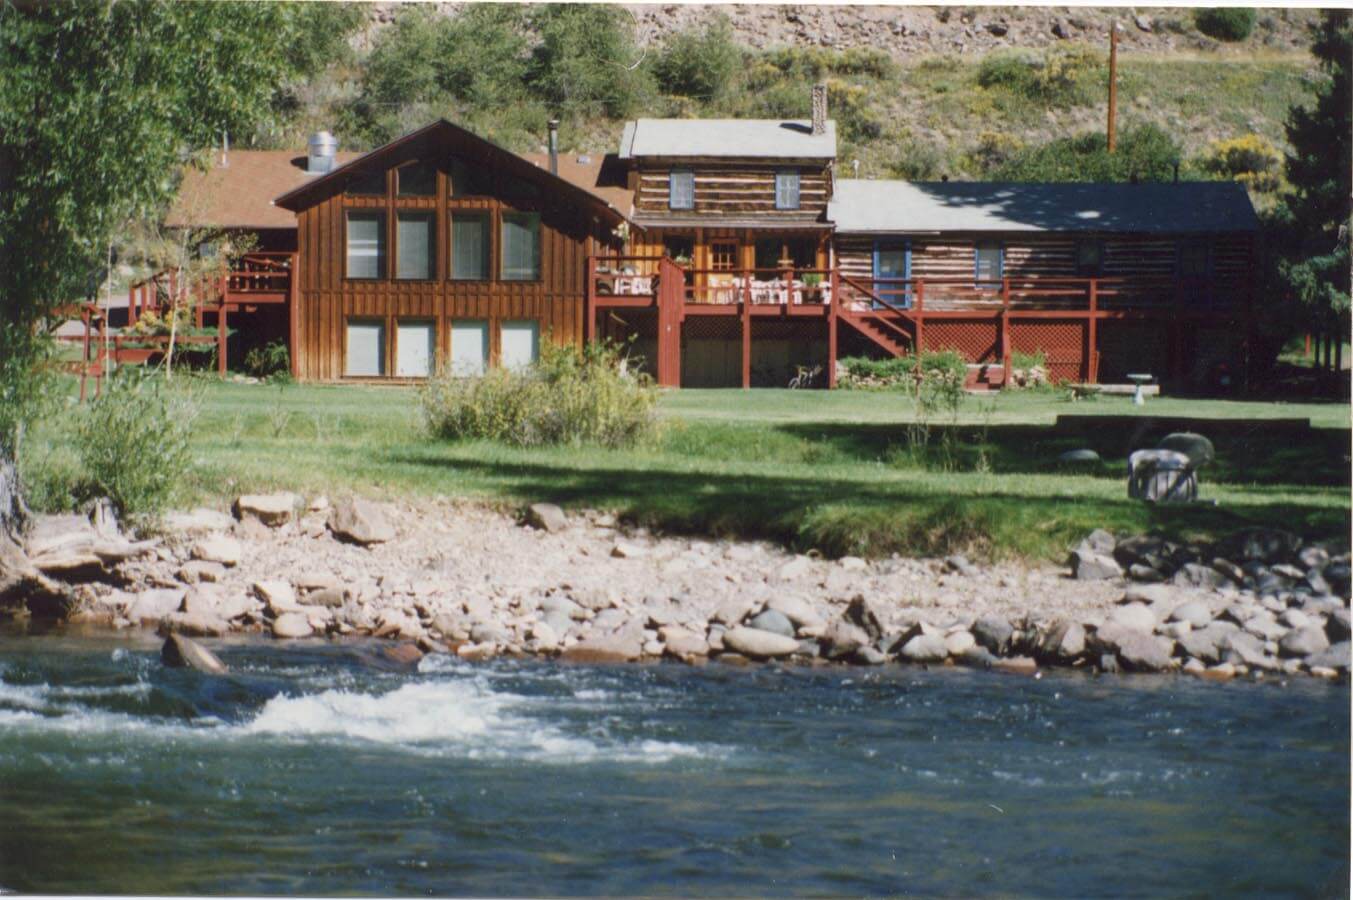 Conejos Ranch - Bed & breakfasts & inns of Colorado Association